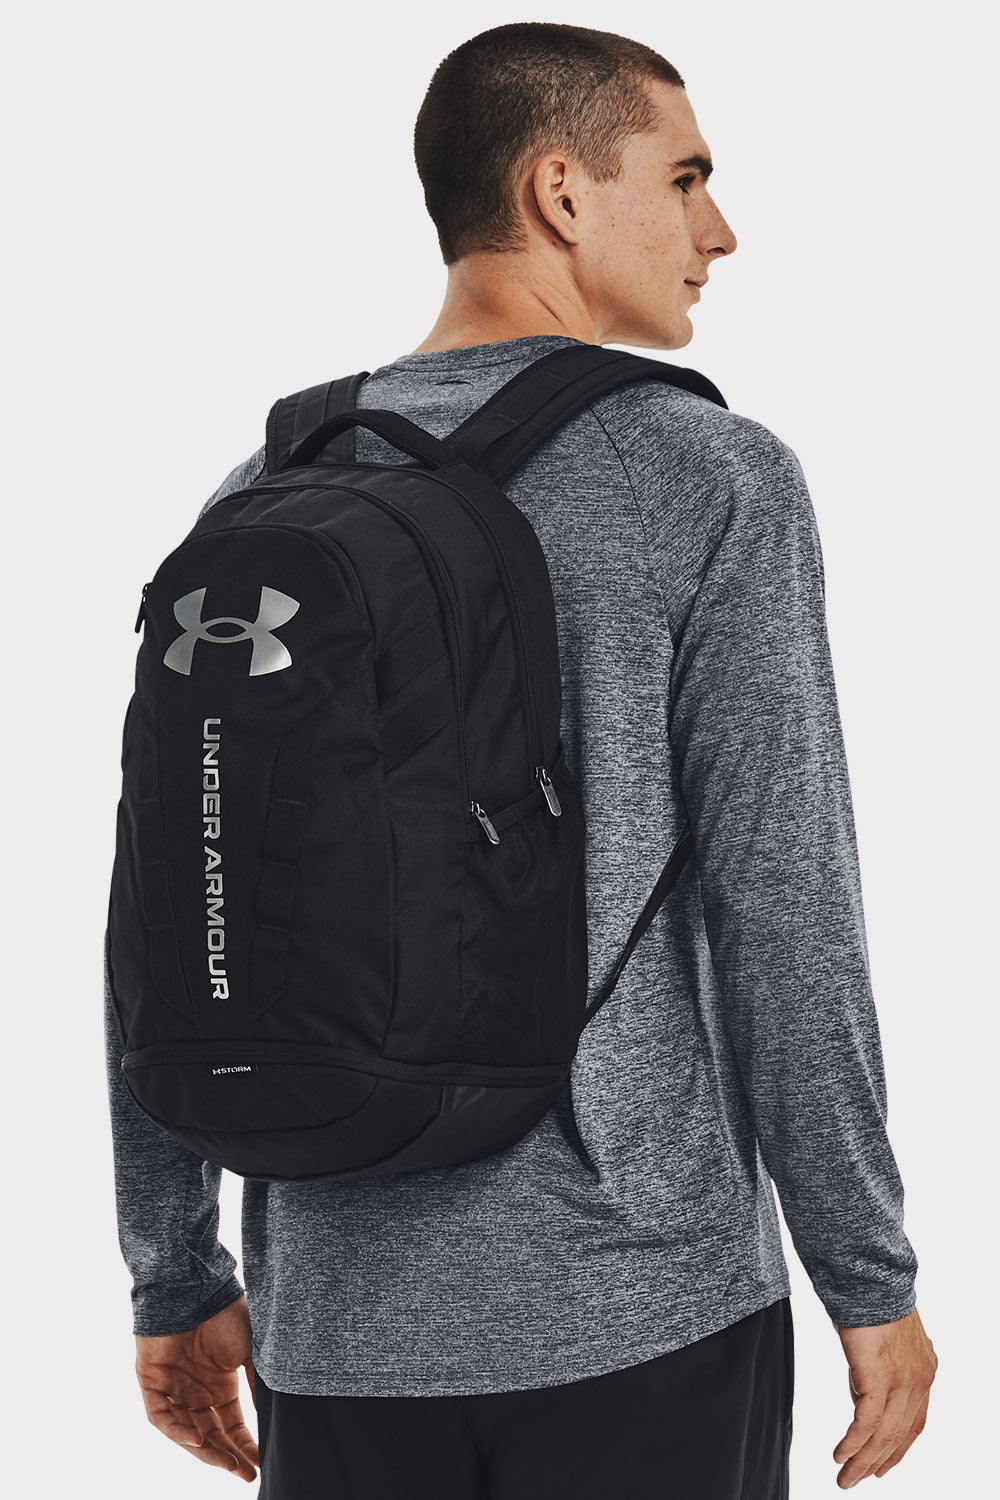 UA Hustle 5.0 Backpack 